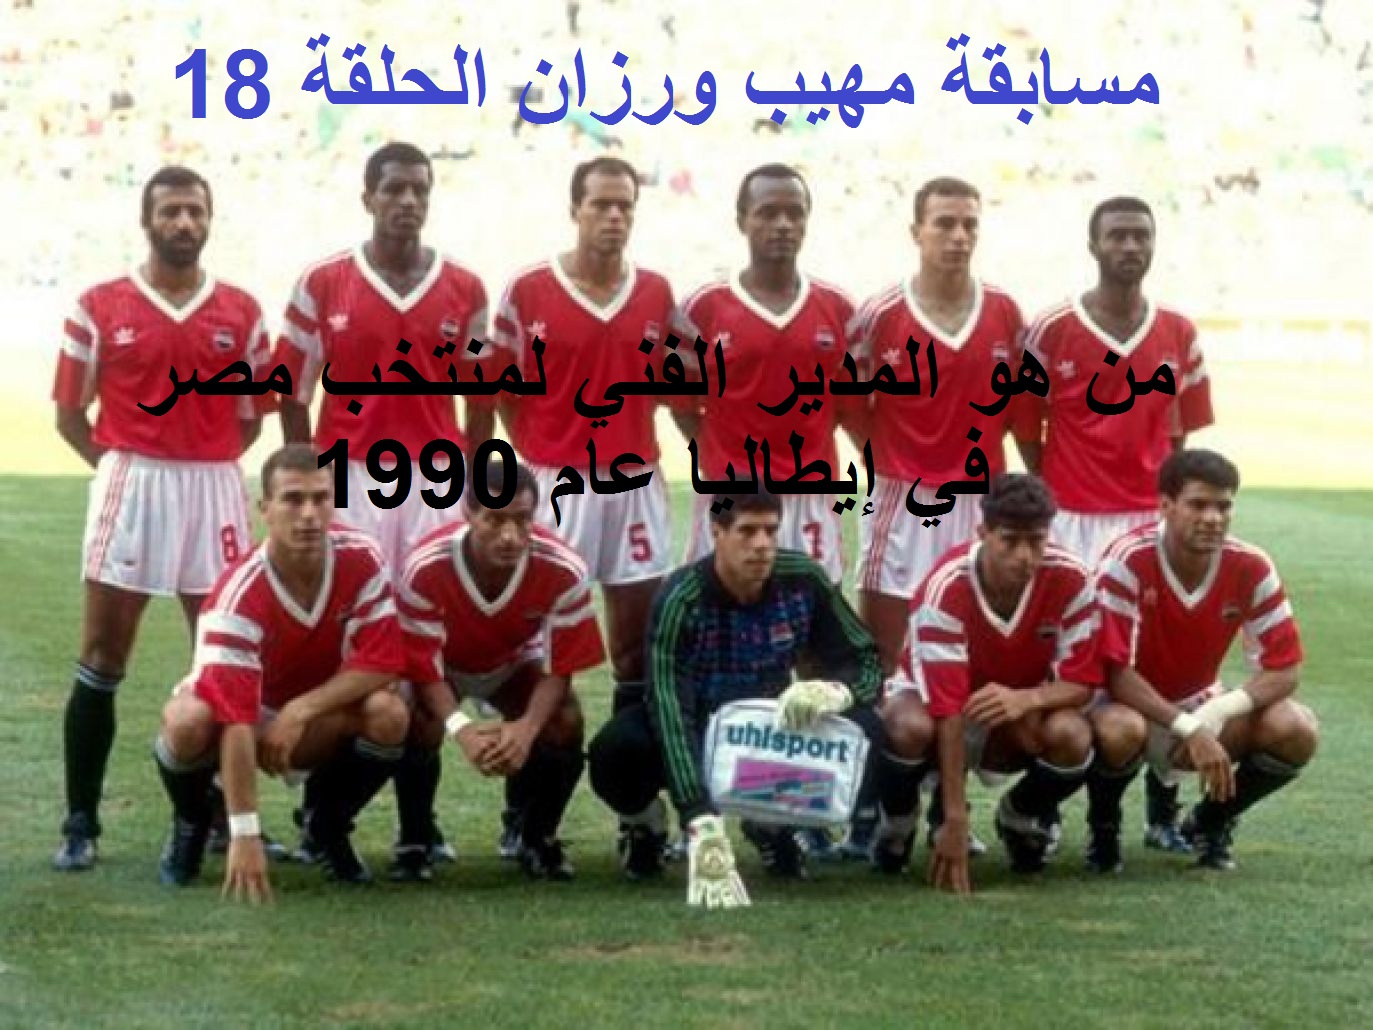 من هو المدير الفني للمنتخب المصري في كأس العالم في إيطاليا 1990.. إجابة السؤال رقم 18 في مسابقة مهيب ورزان رمضان 2021